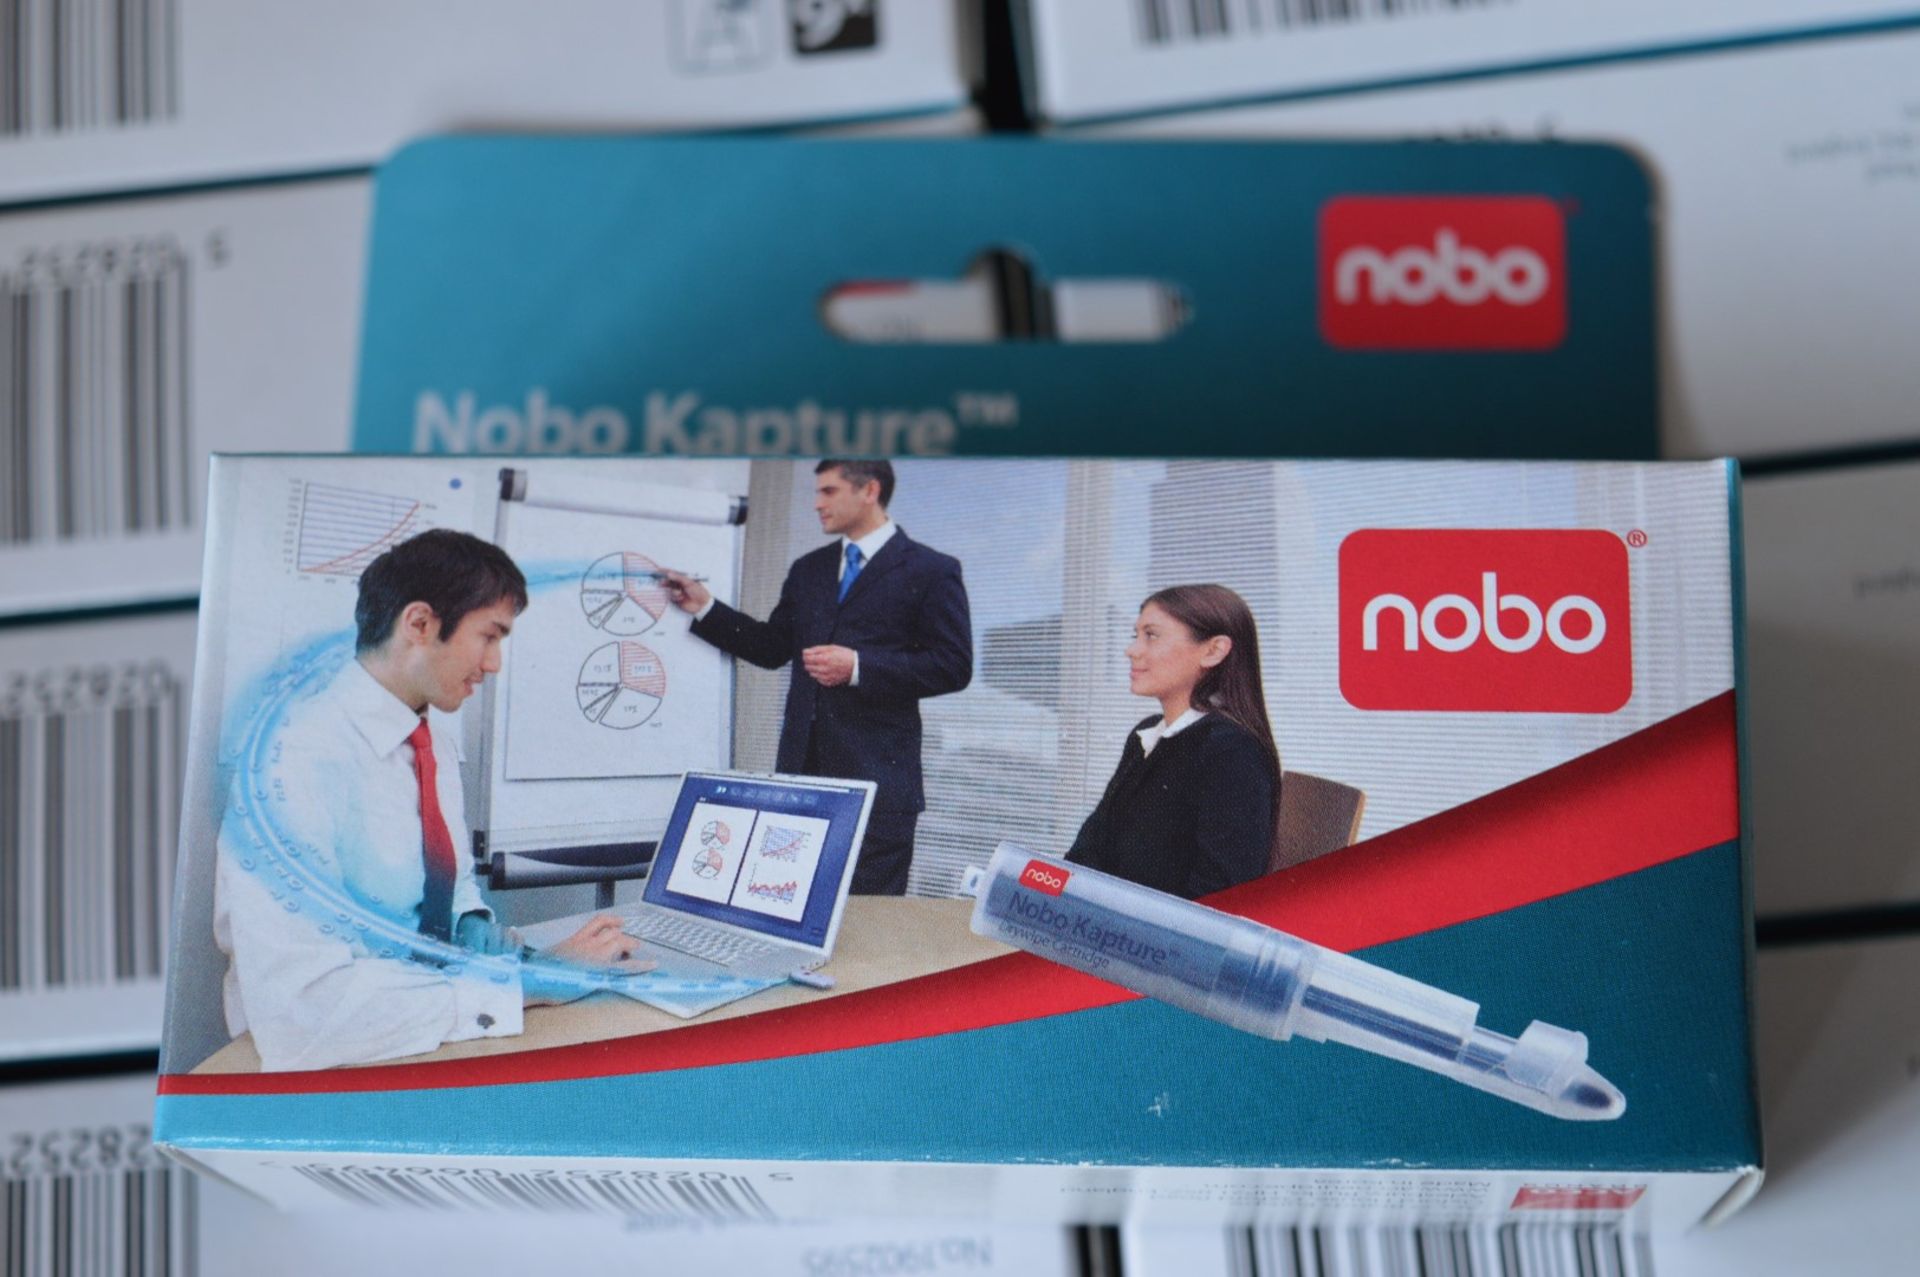 120 x Packs of Nobo Kapture Ink Cartridges - Includes 120 x Packs of 6 x Ink Cartridges - For Use - Image 9 of 11